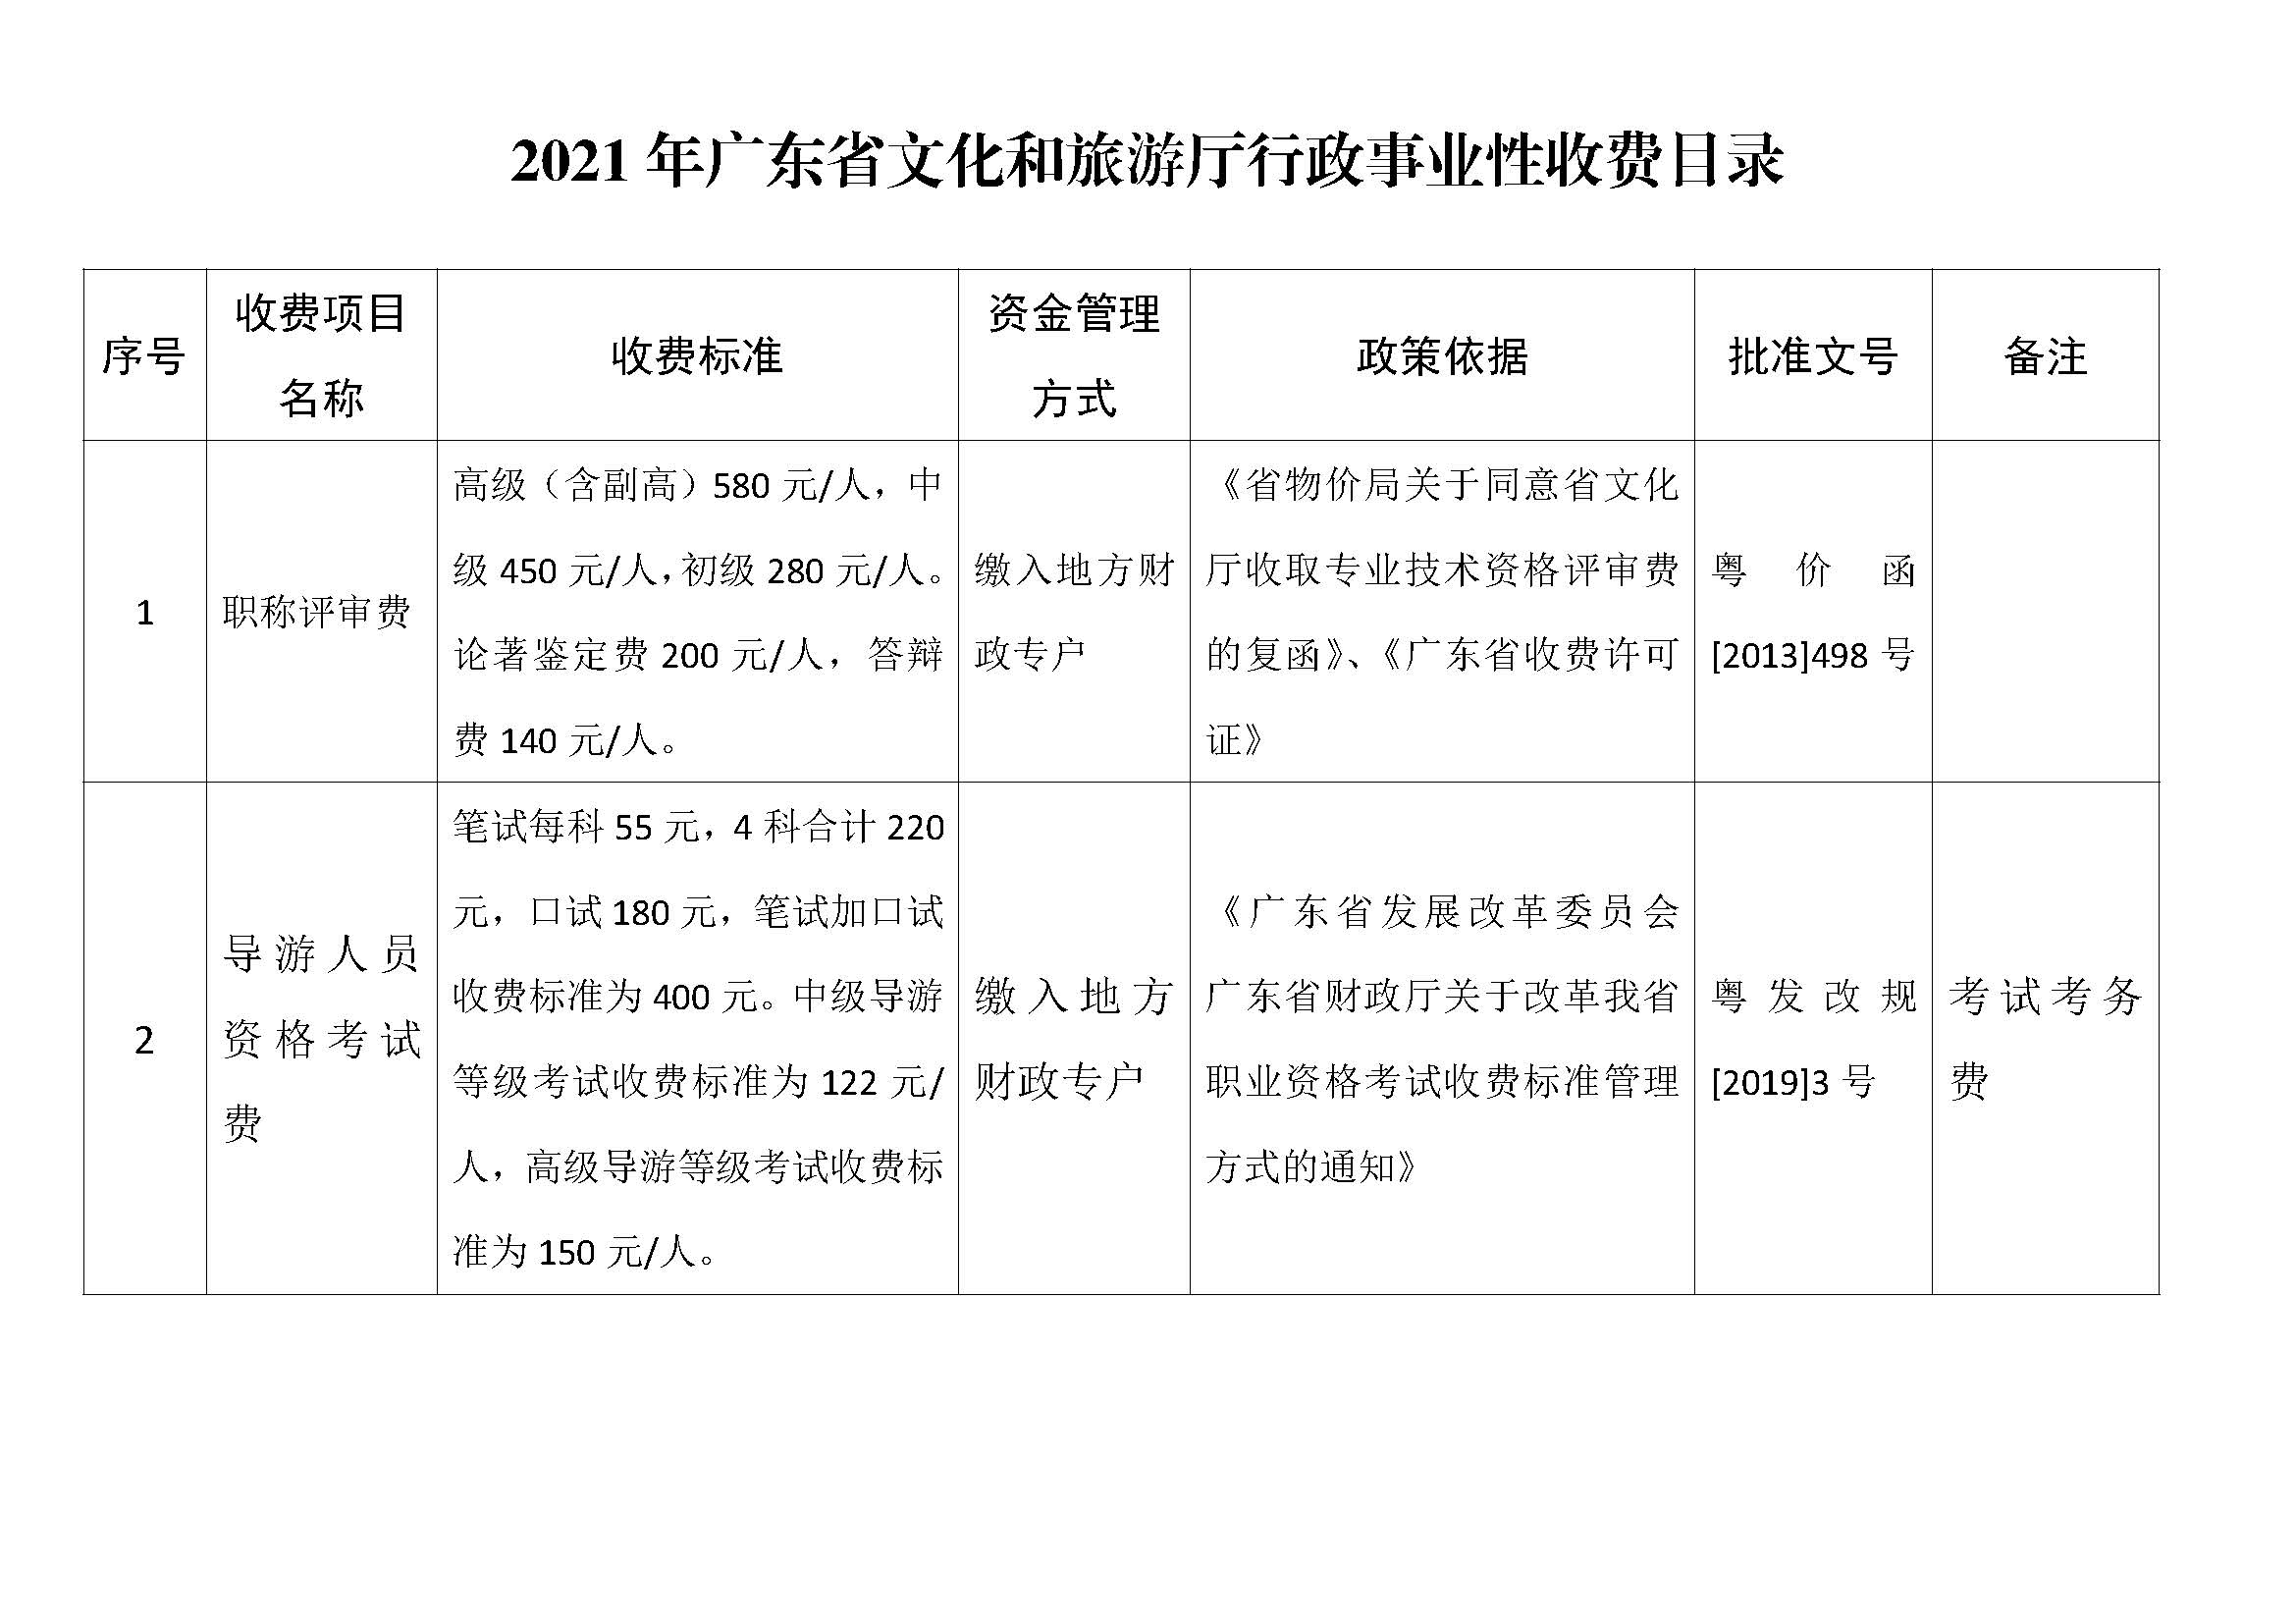 2021年广东省文化和旅游厅行政事业性收费目录.jpg